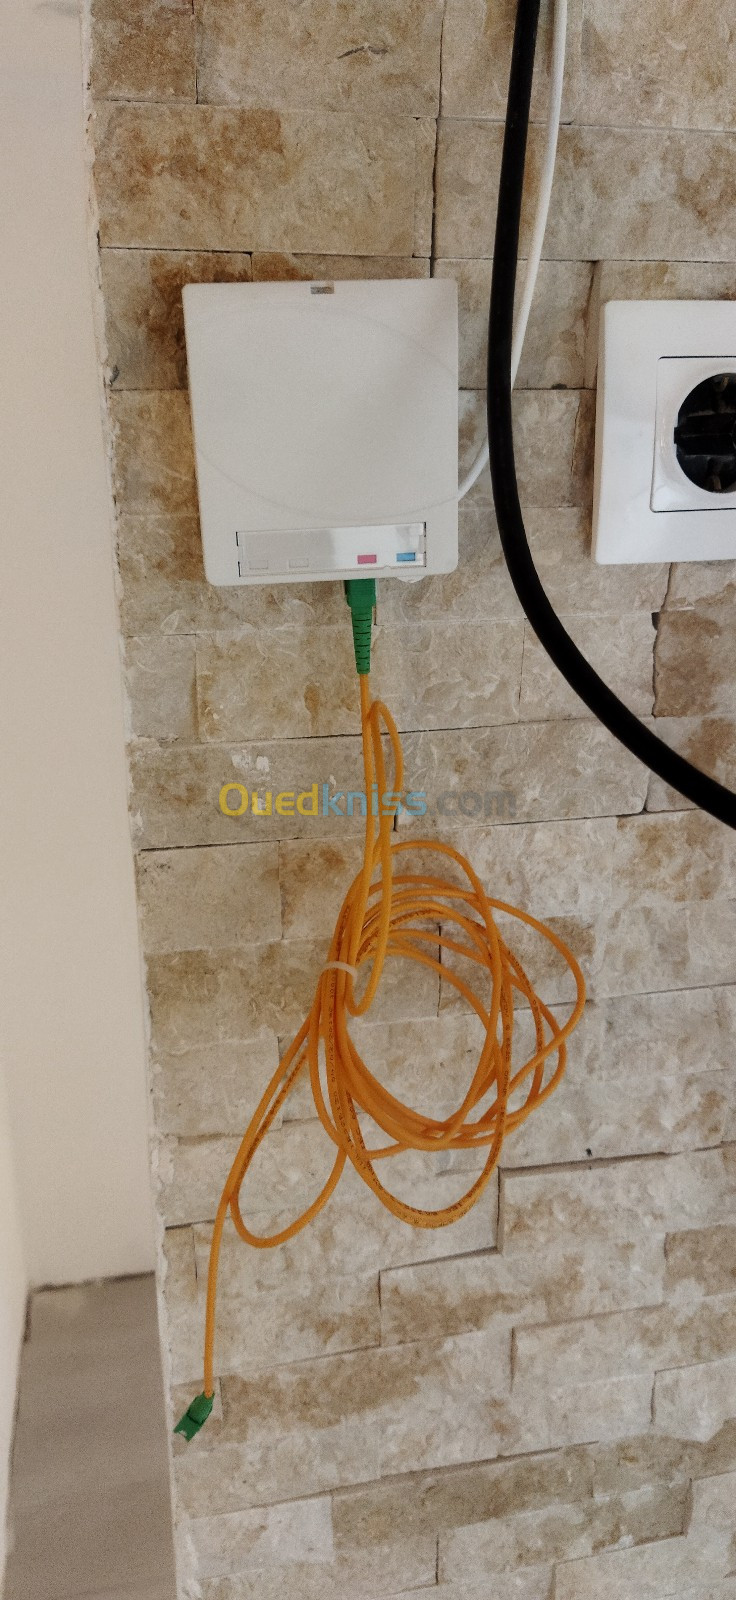 Réparation réseaux Internet fibre optique